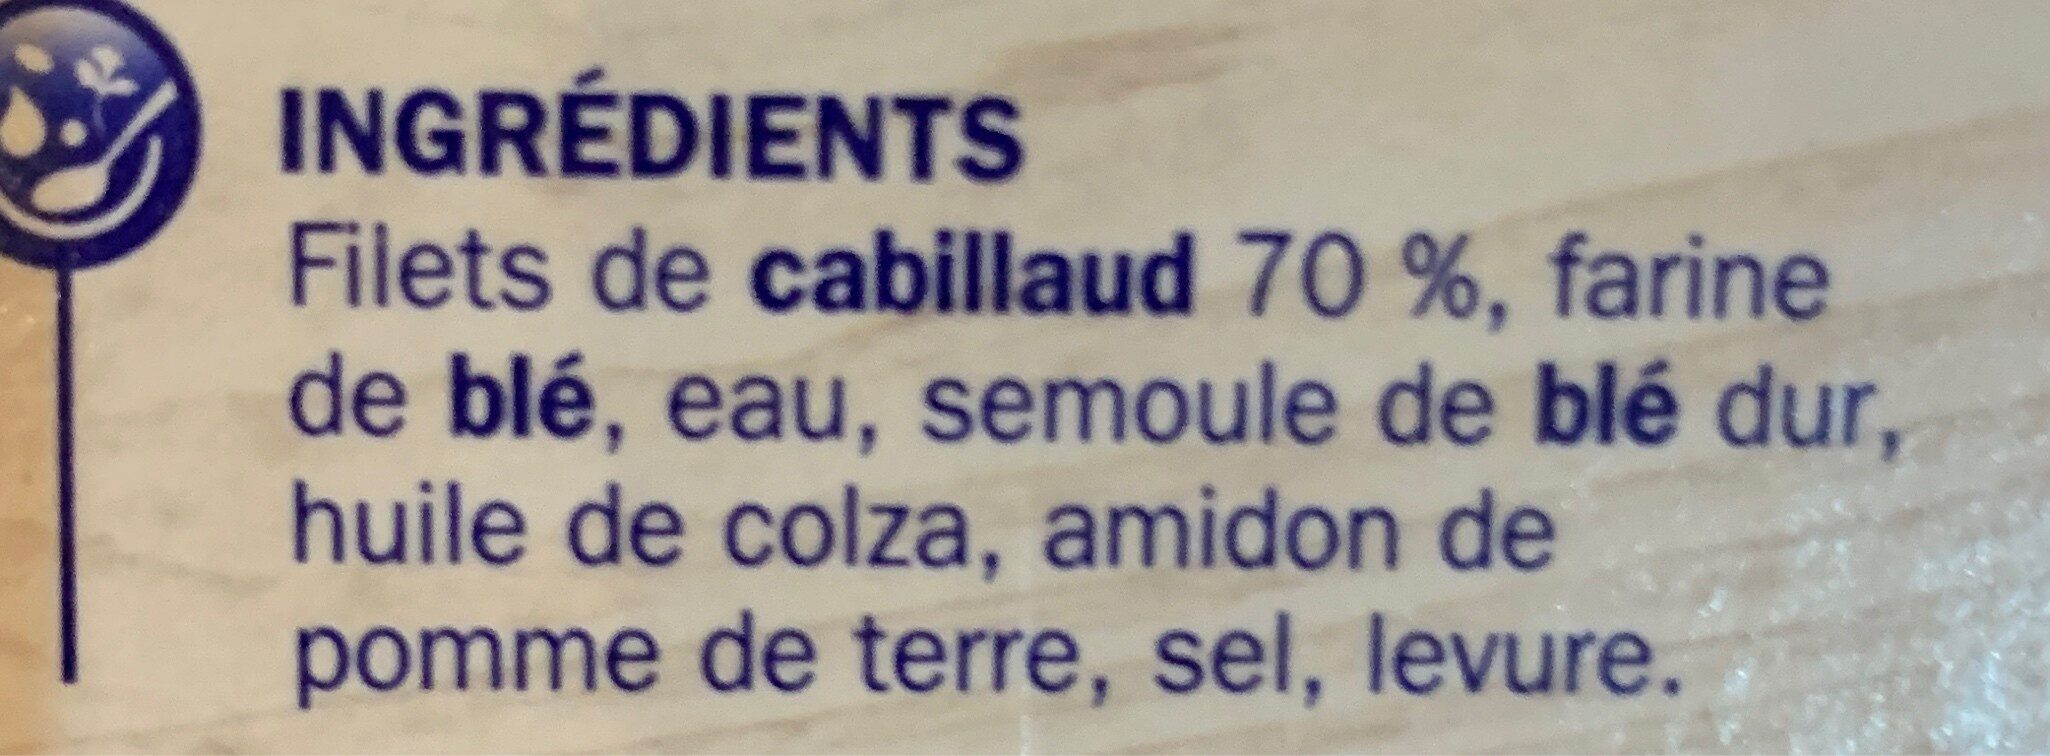 Tranches panées de Cabillaud x8 - Ingrédients